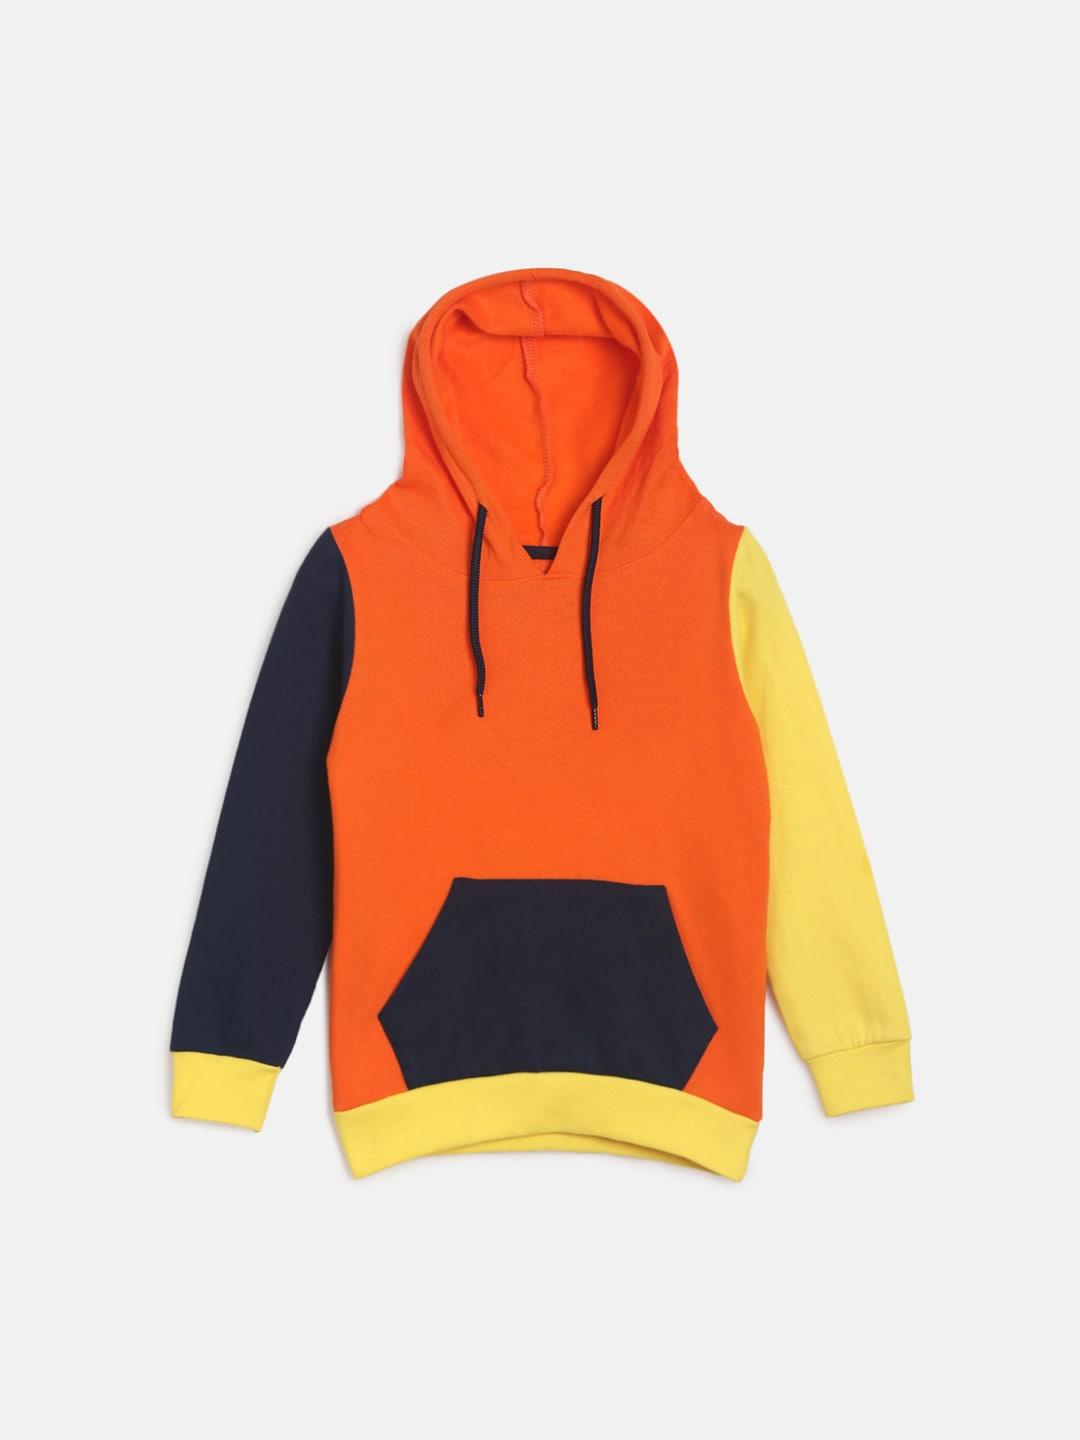 tales-&-stories-boys-orange-hooded-sweatshirt